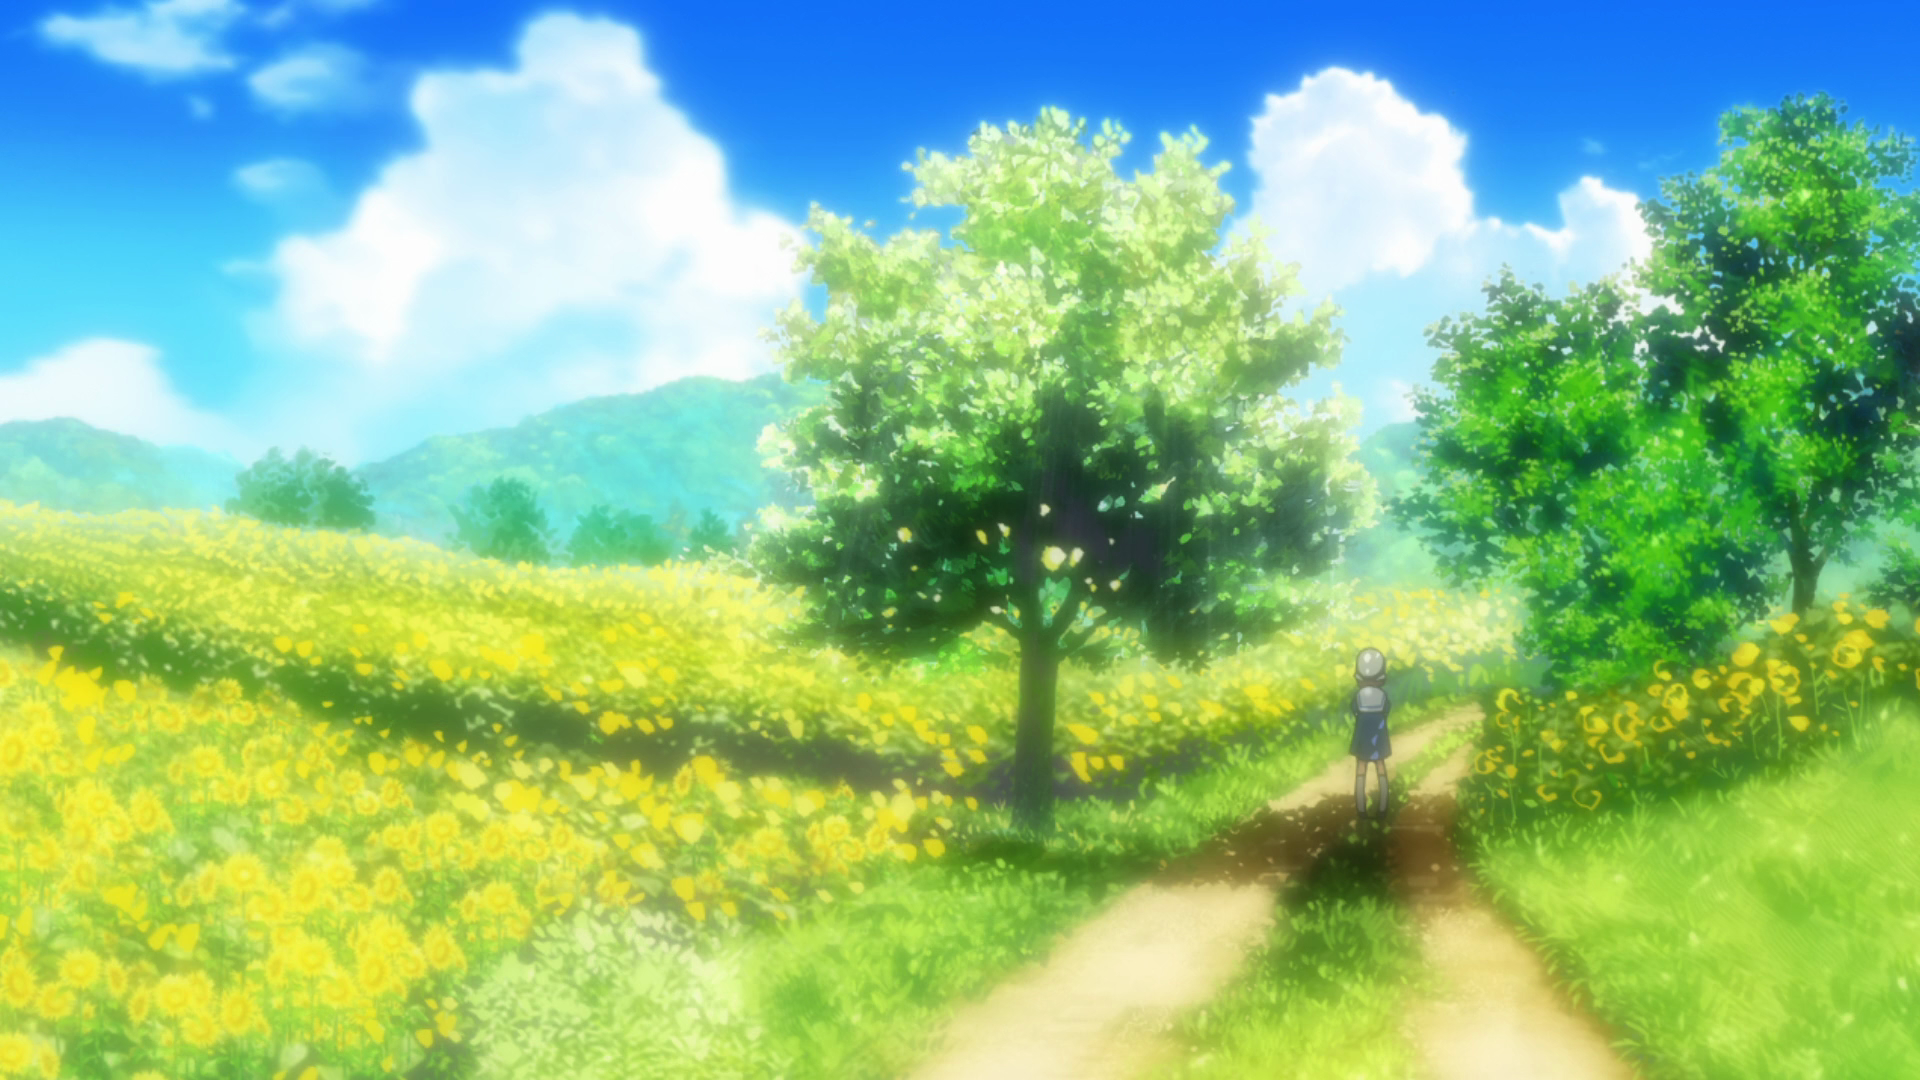  Anime Aesthetic   Anime scenery Landscape art painting Anime flower